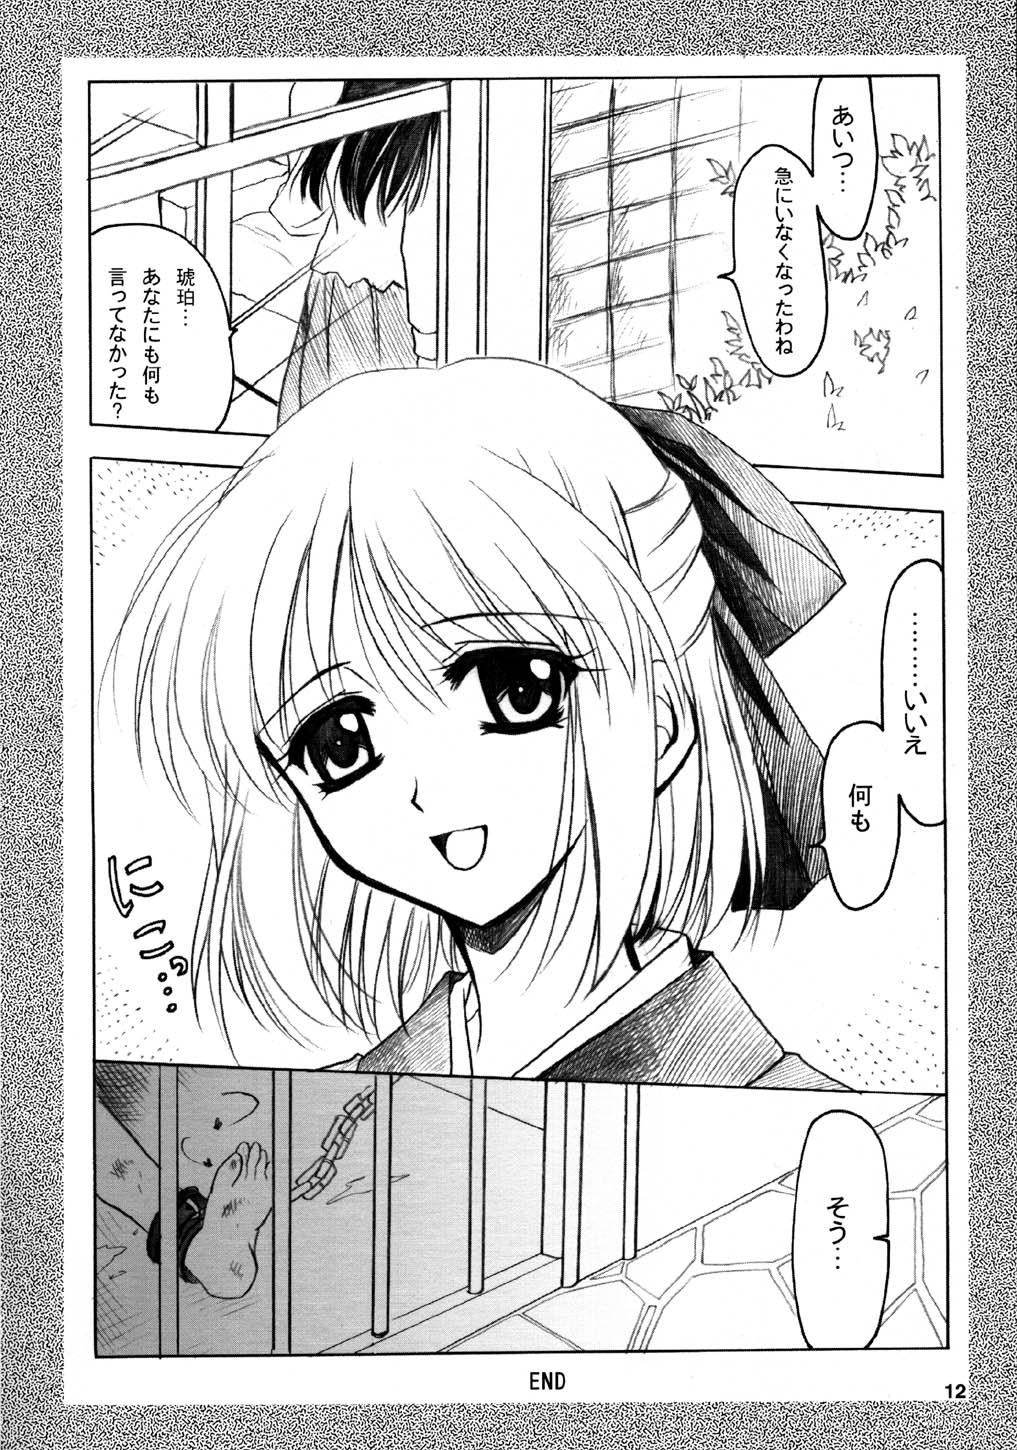 Doggy Style Gepparou Maki no Ichi.Go - Tsukihime Interacial - Page 12